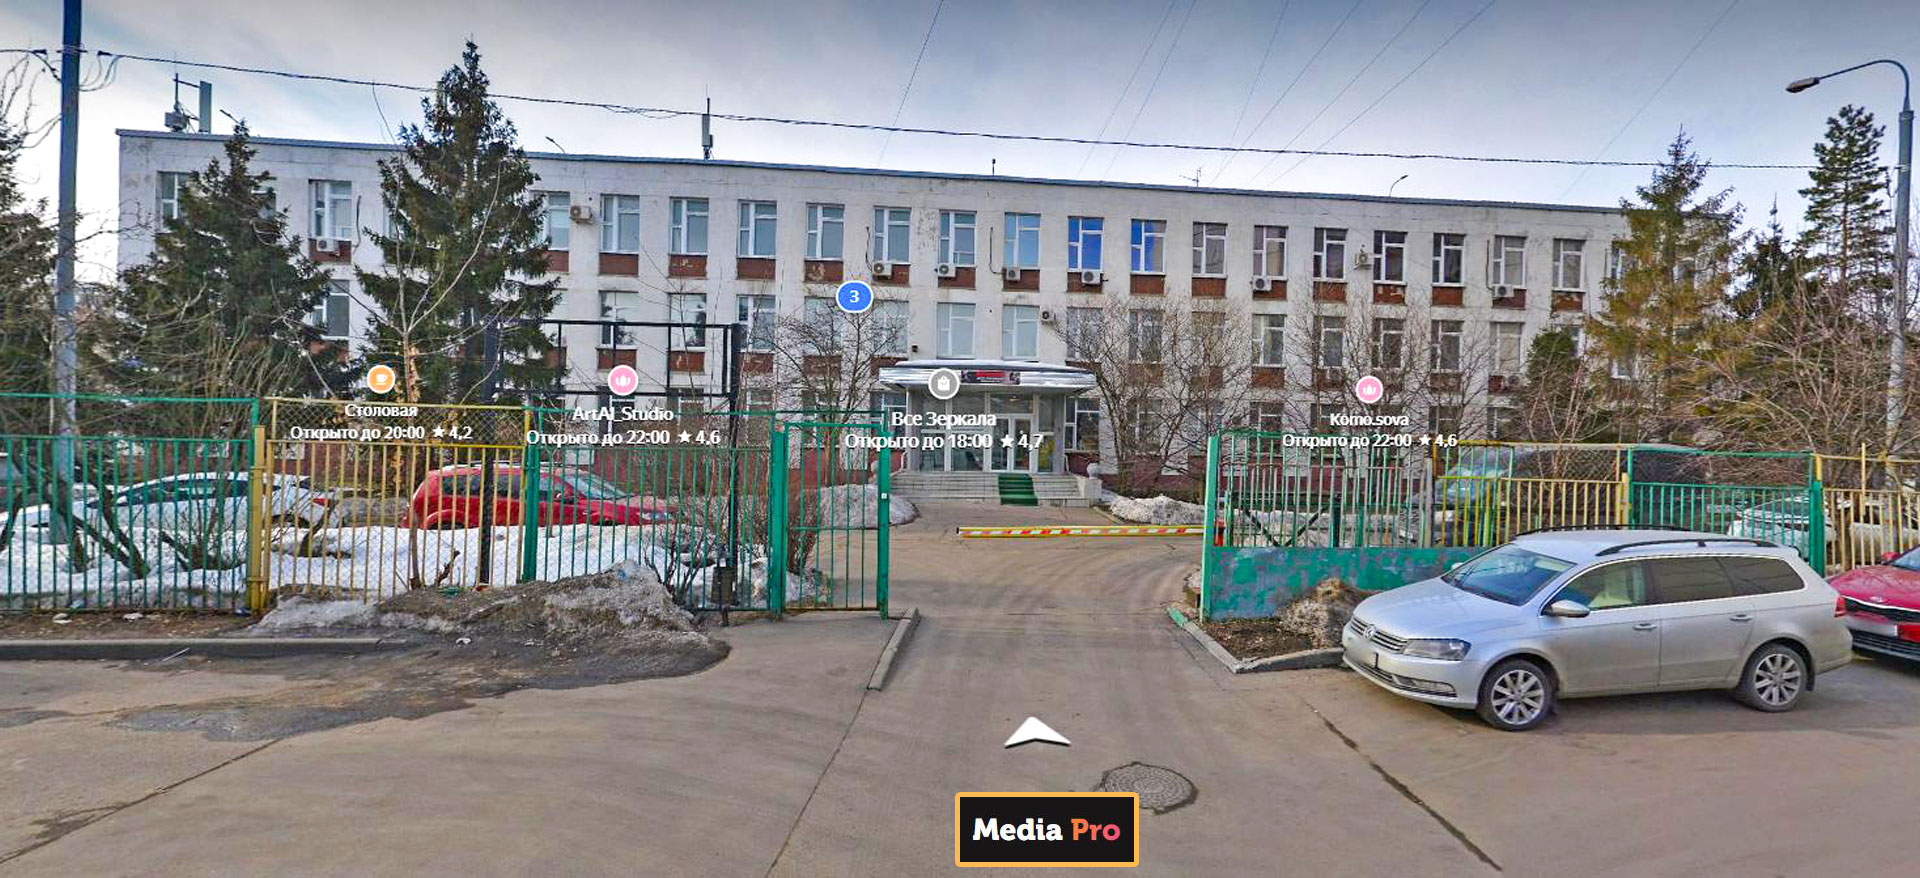 Здание в г. Москва на ул. ул. Мусоргского, расположен офис Media Pro.